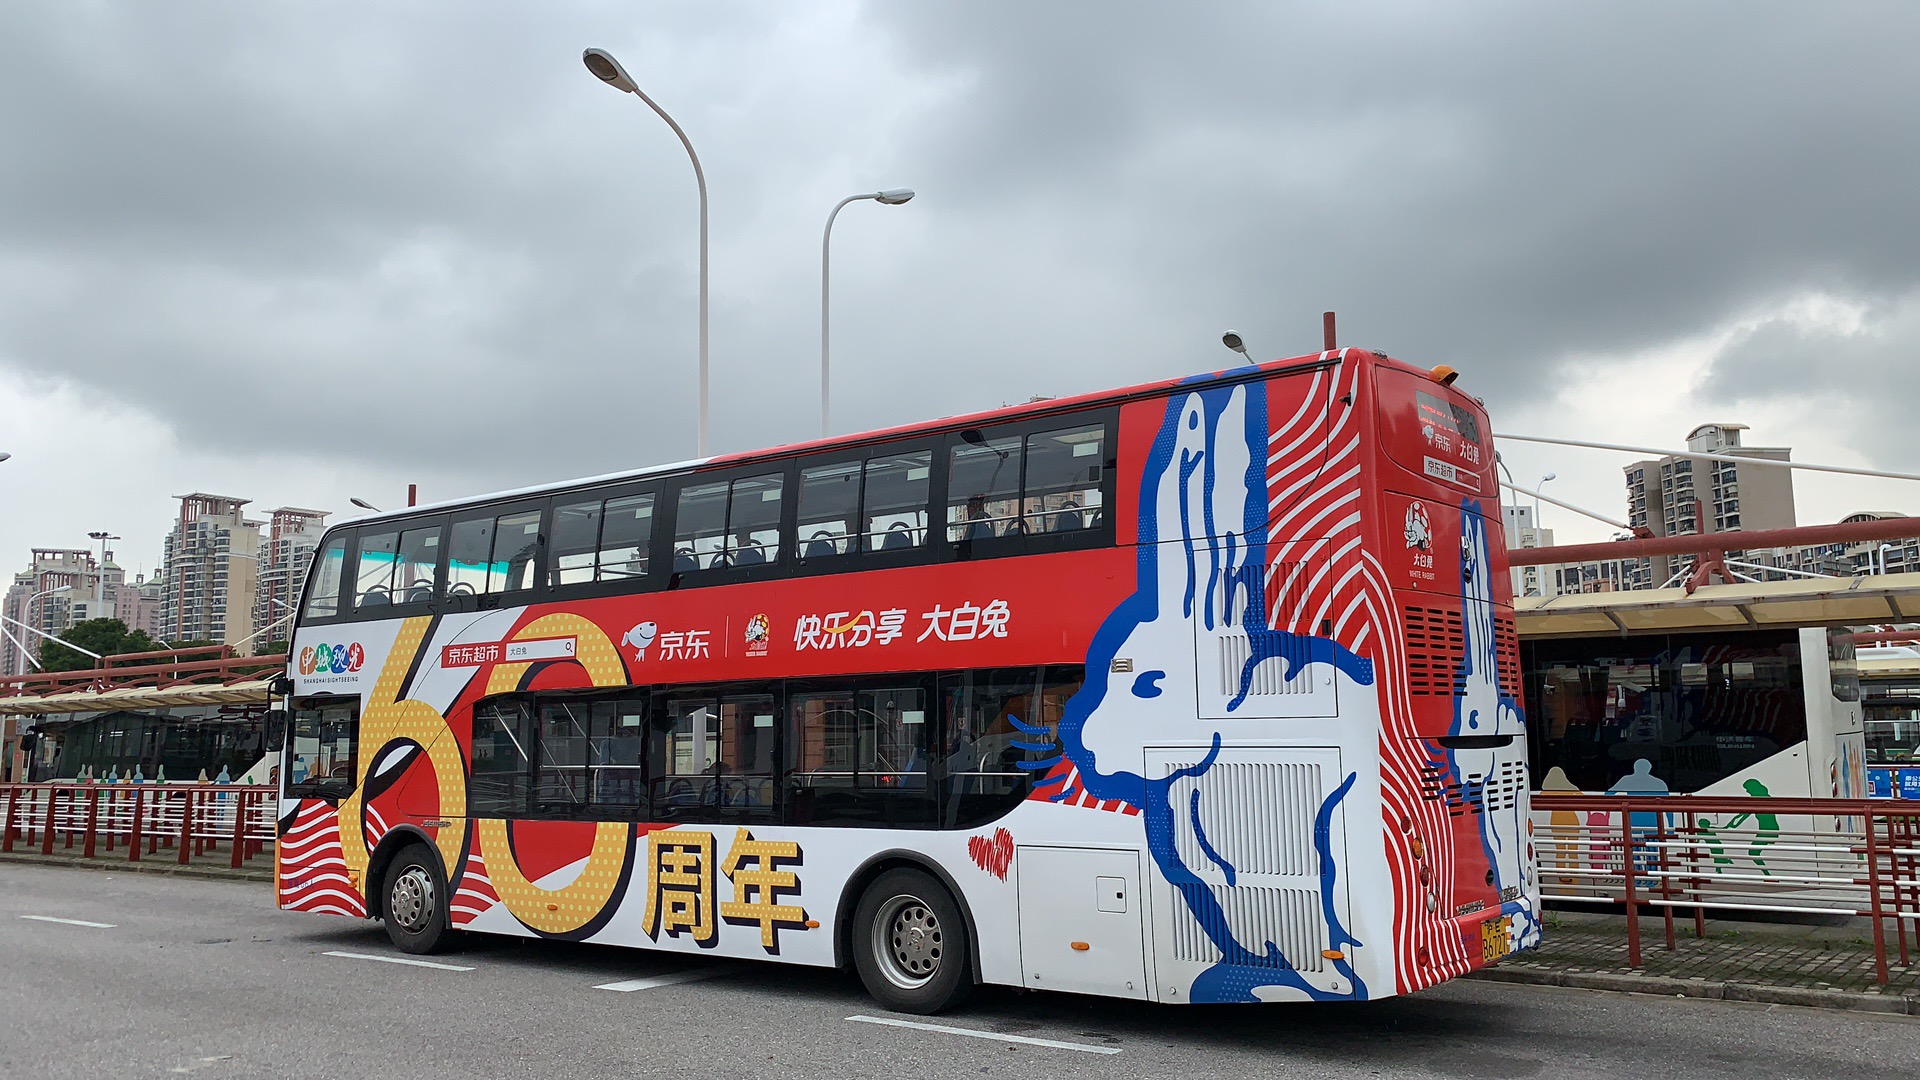 上海黄浦区全黄浦区申城观光旅游巴士上海市区公交车车身